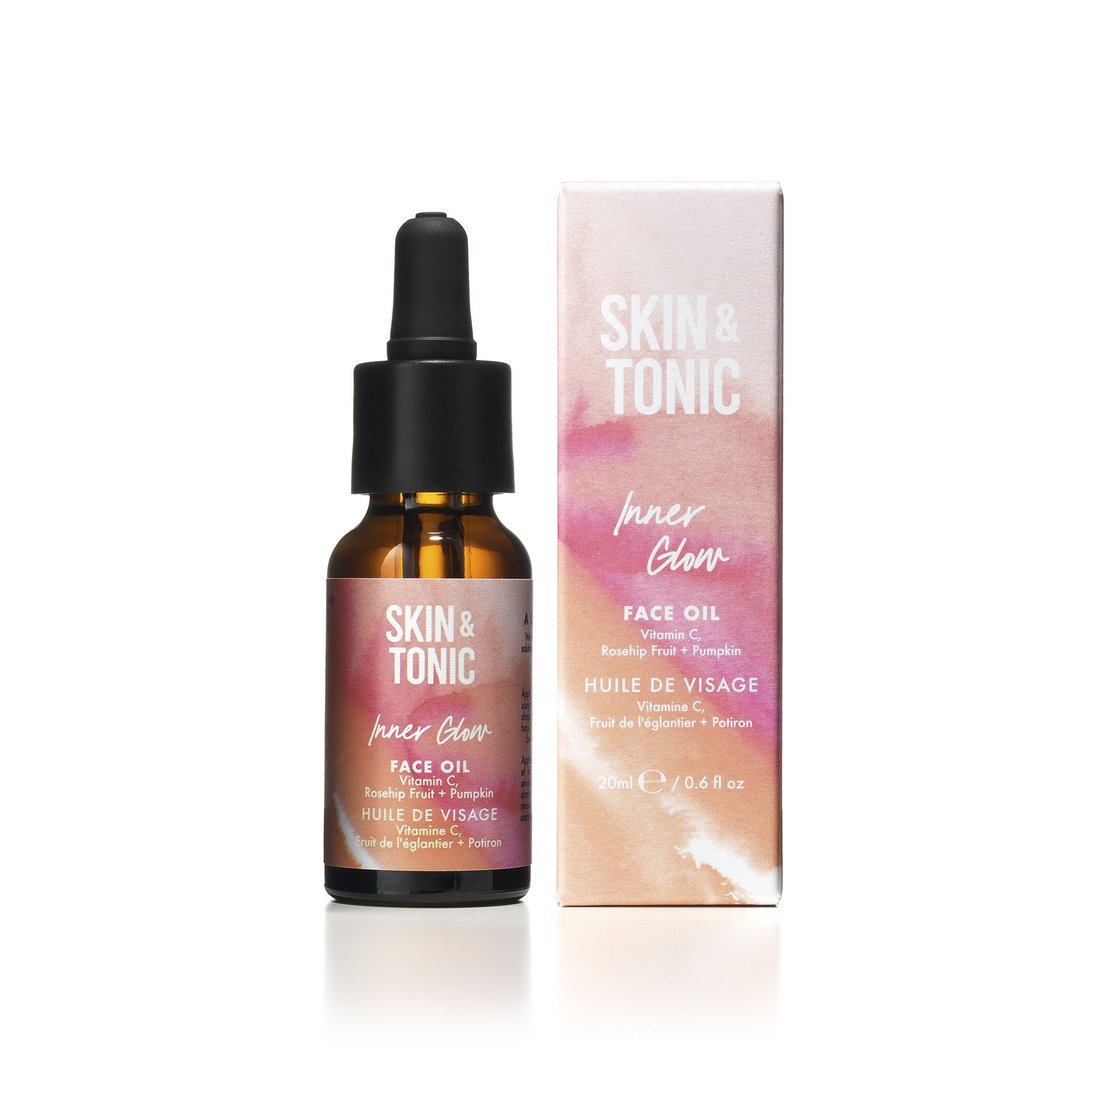 Skin & Tonic Inner Glow Face Oil